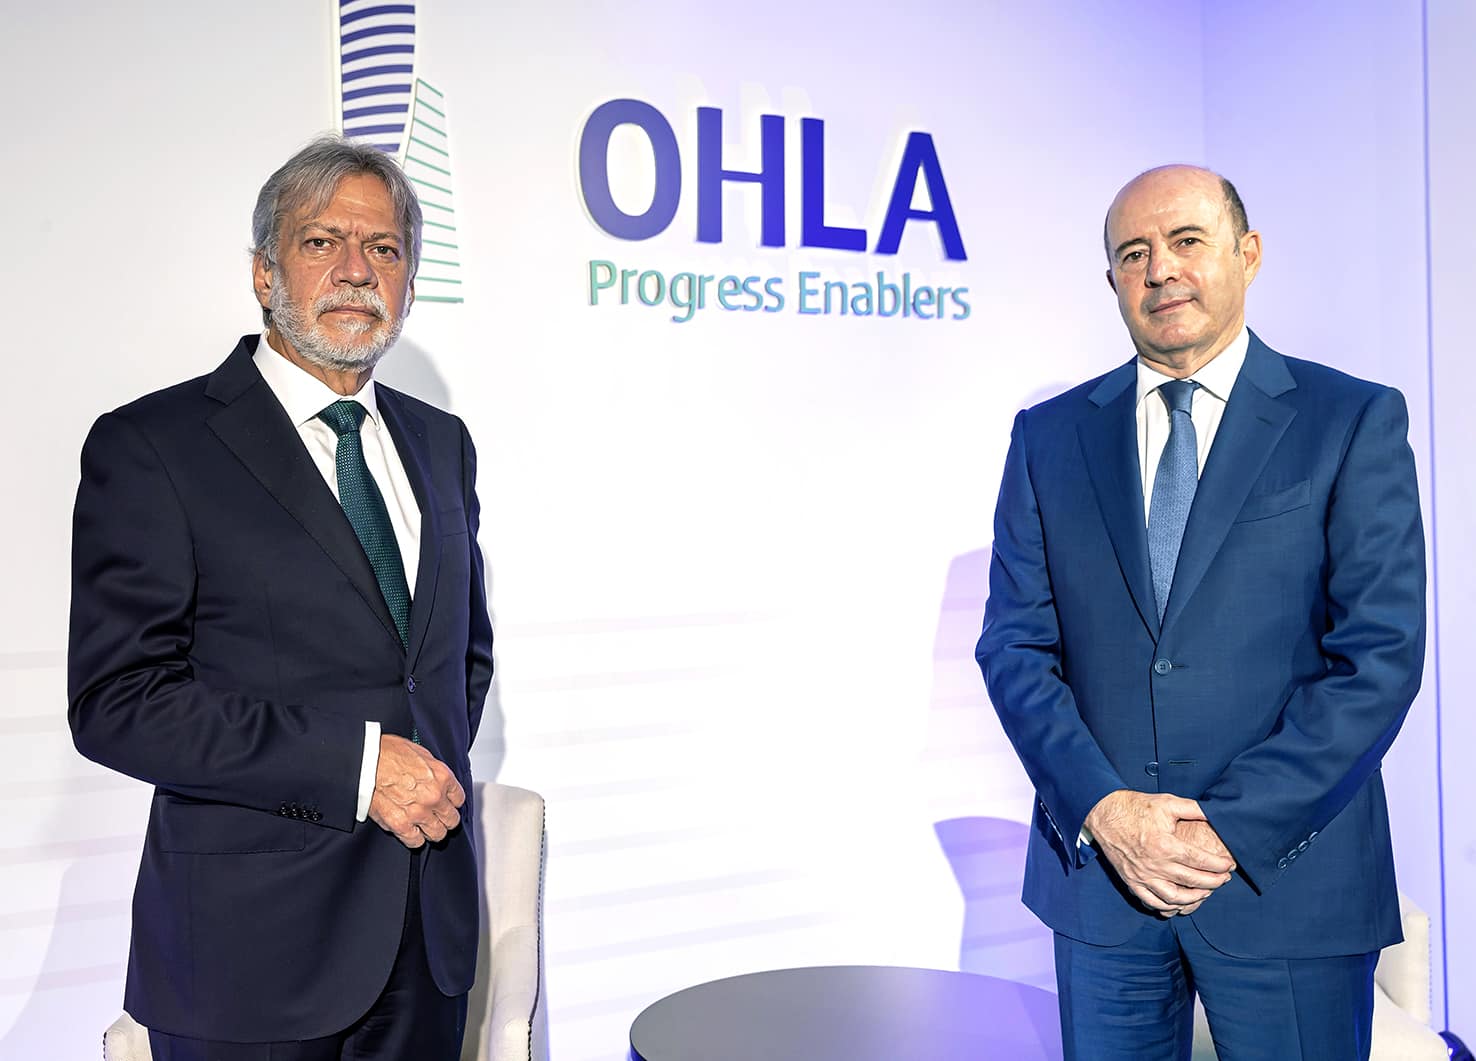 D. Luis Amodio y D. José Antonio Fernández Gallar, presidente y CEO de OHLA.